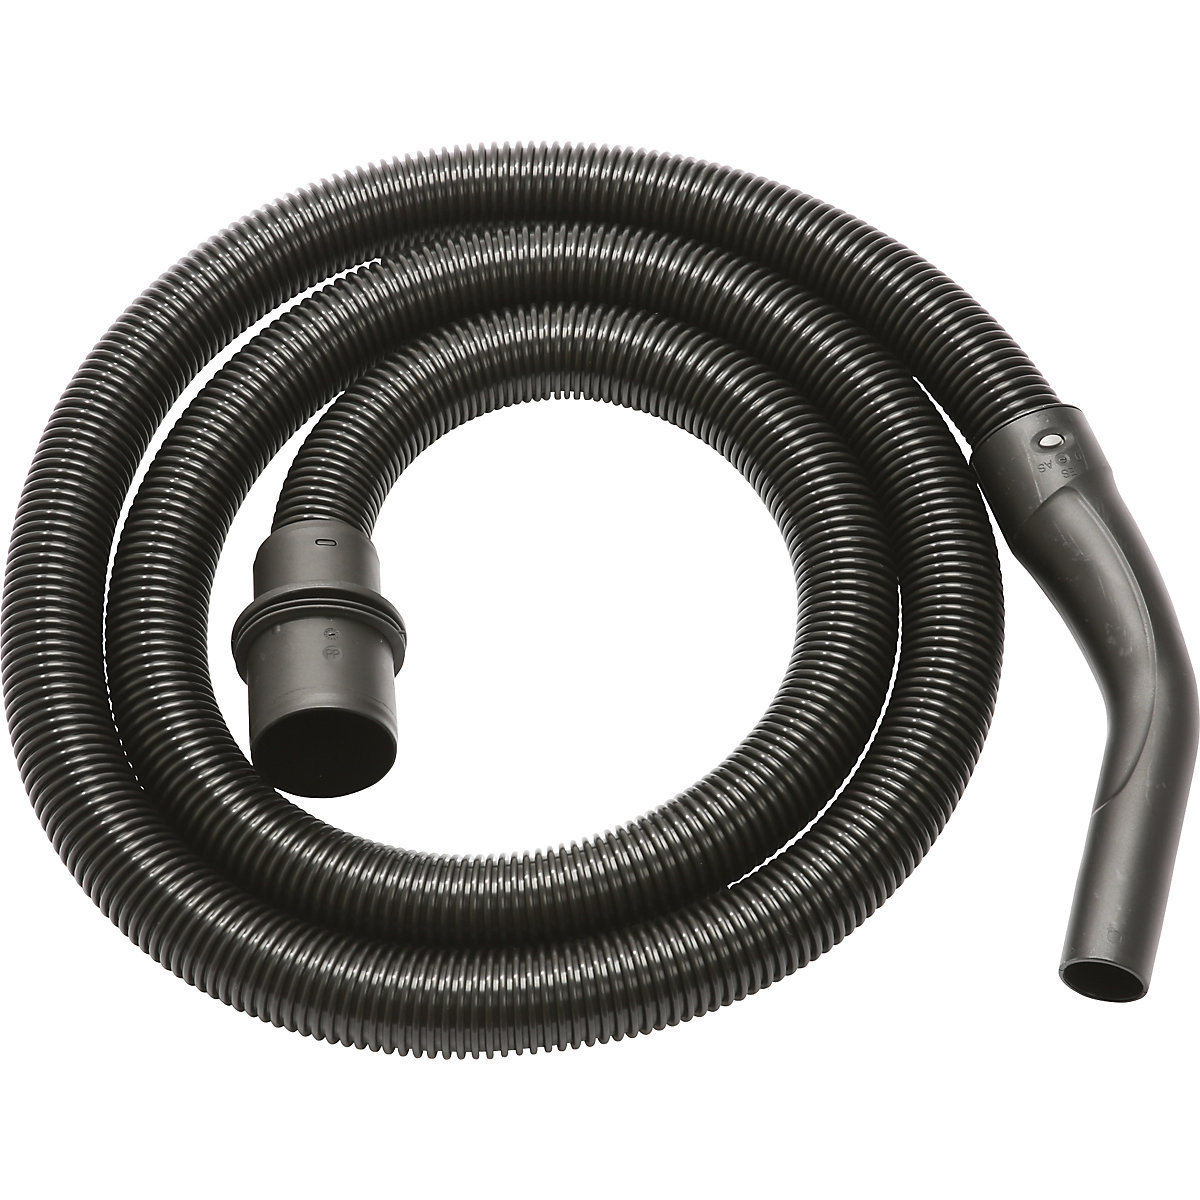 Suction hose